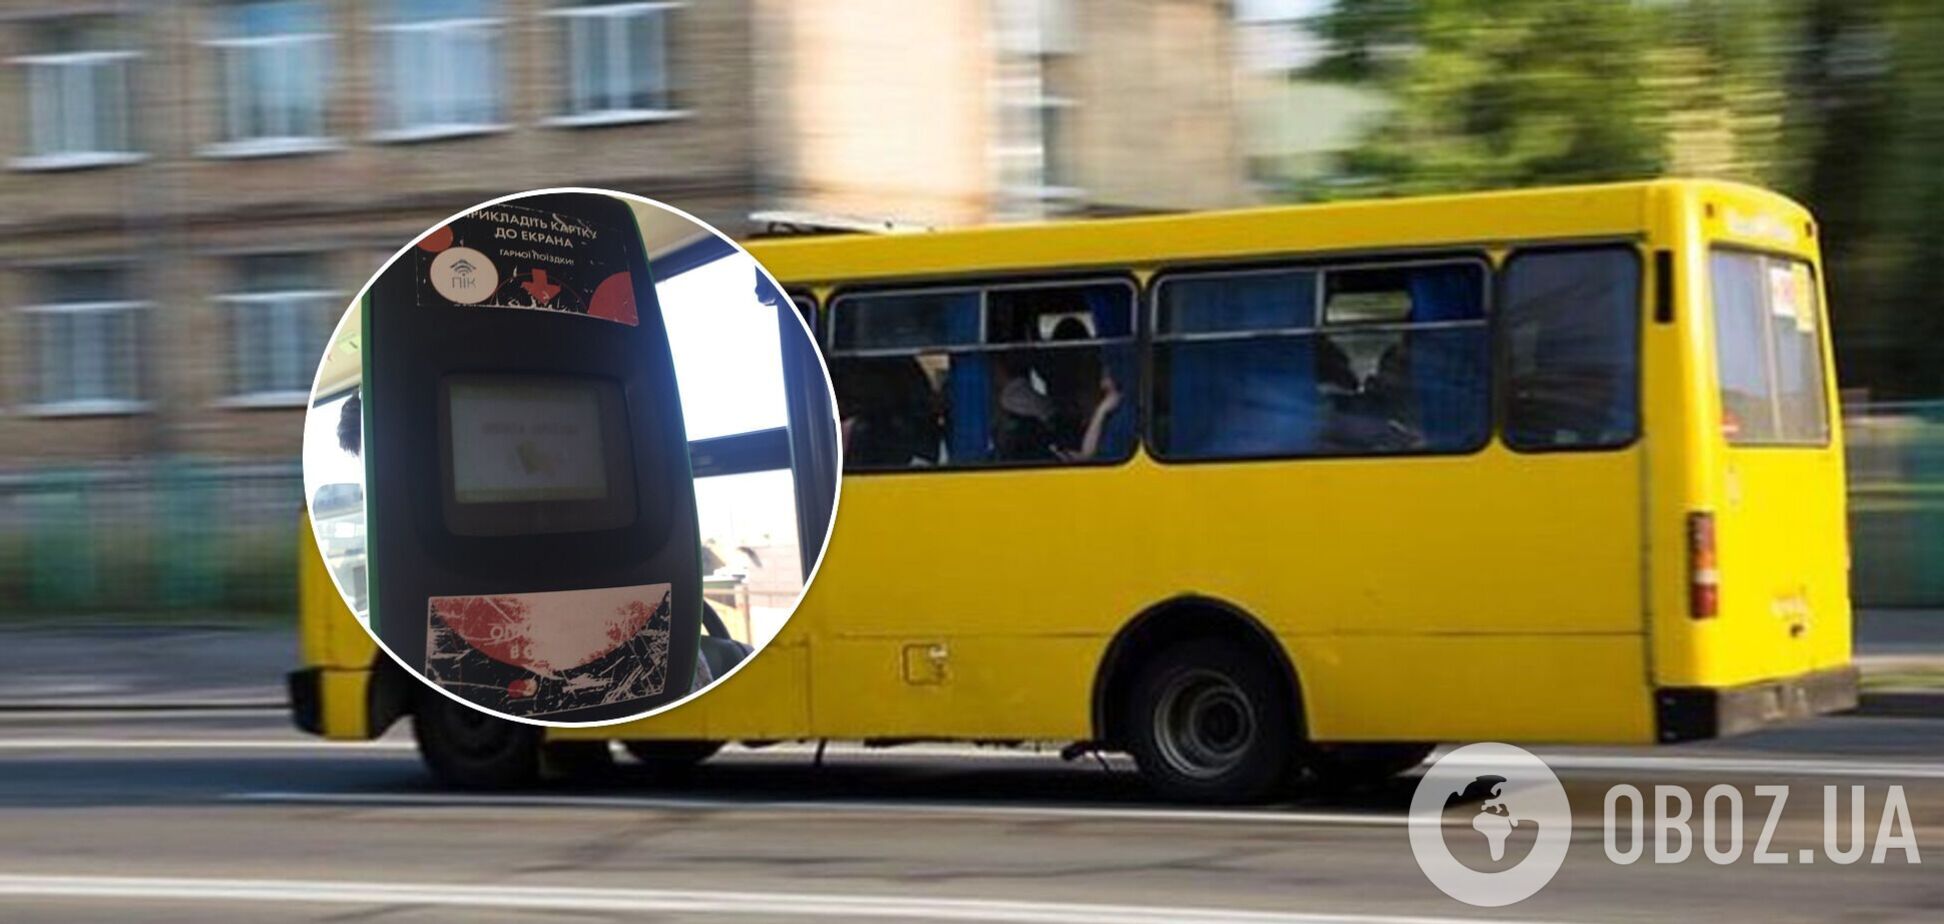 Киевлянка пожаловалась на мошенничество в транспорте: деньги с карты пропали ночью